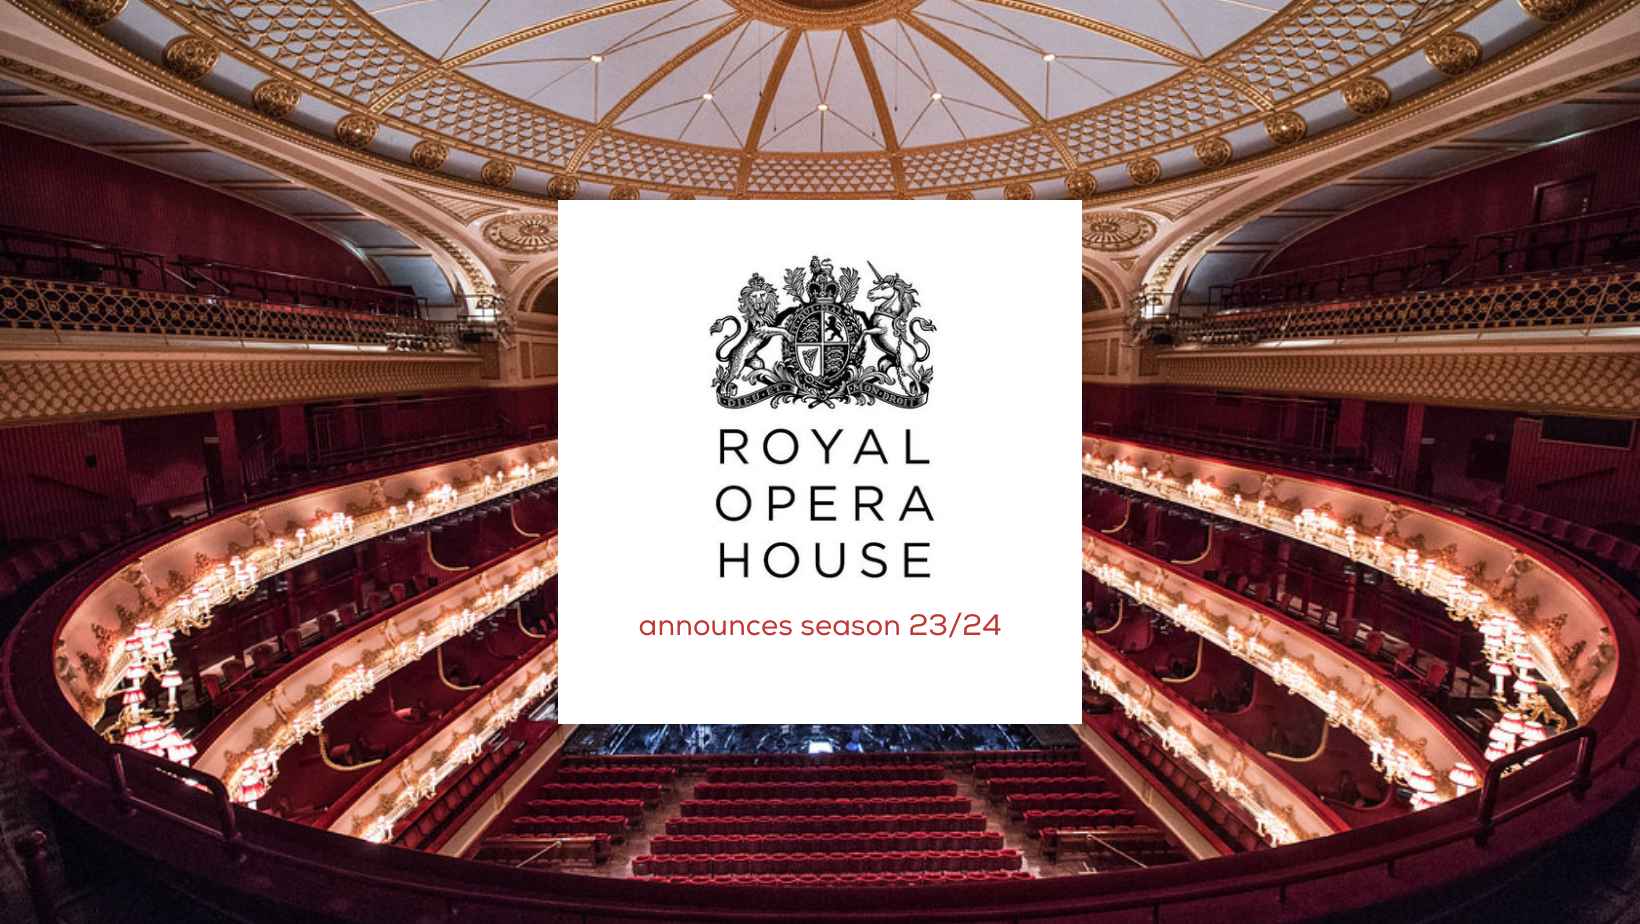  Royal Opera House  has announced season 23-24